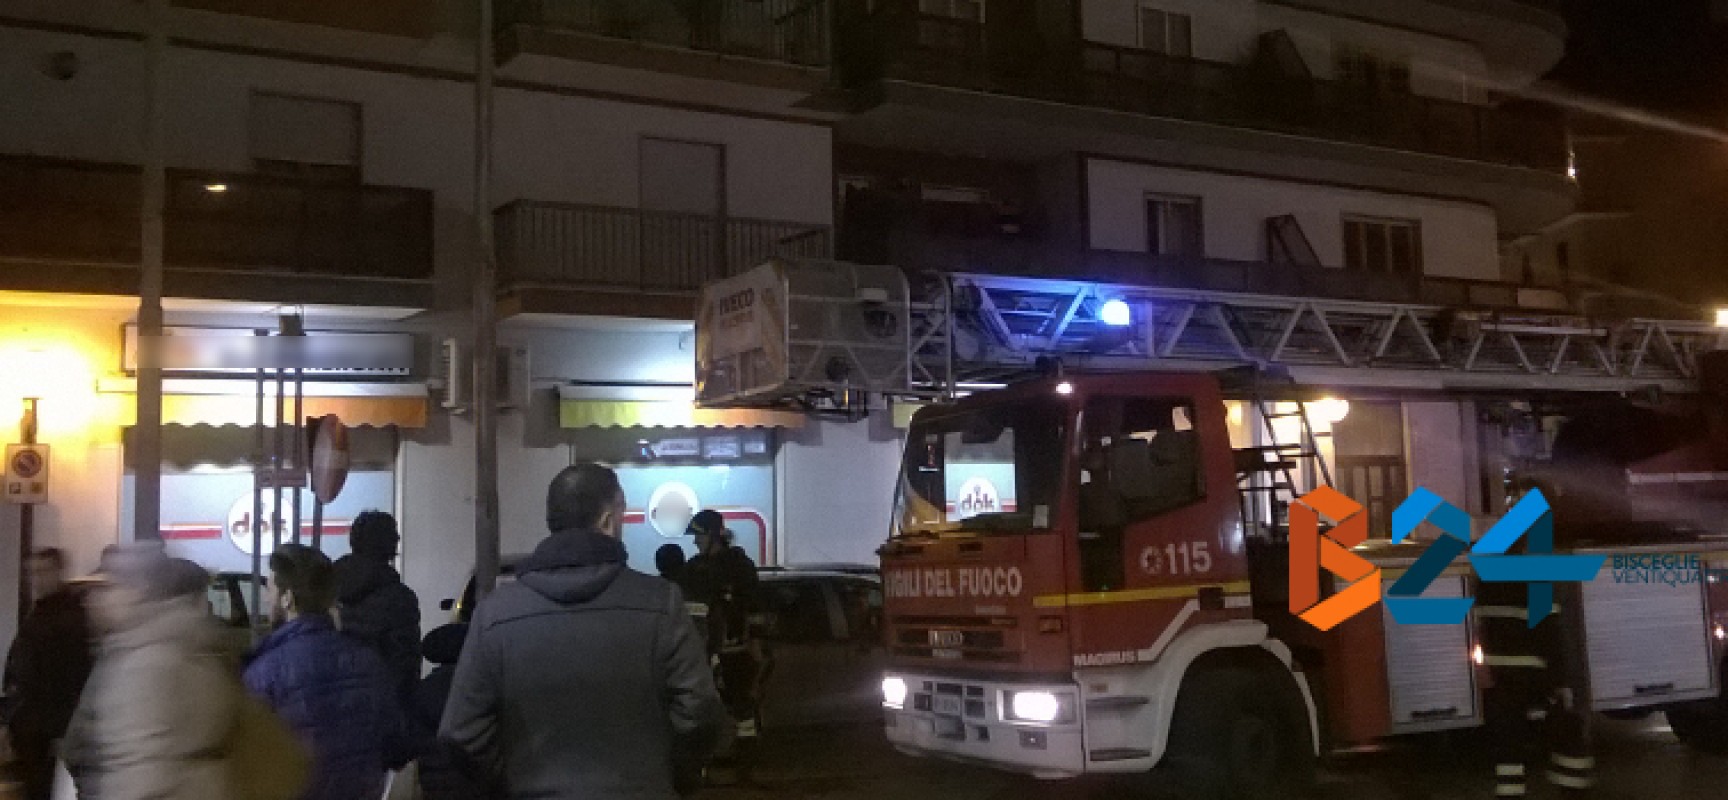 Incendio in attico di via Berarducci Vives, vigili del fuoco sedano le fiamme / FOTO